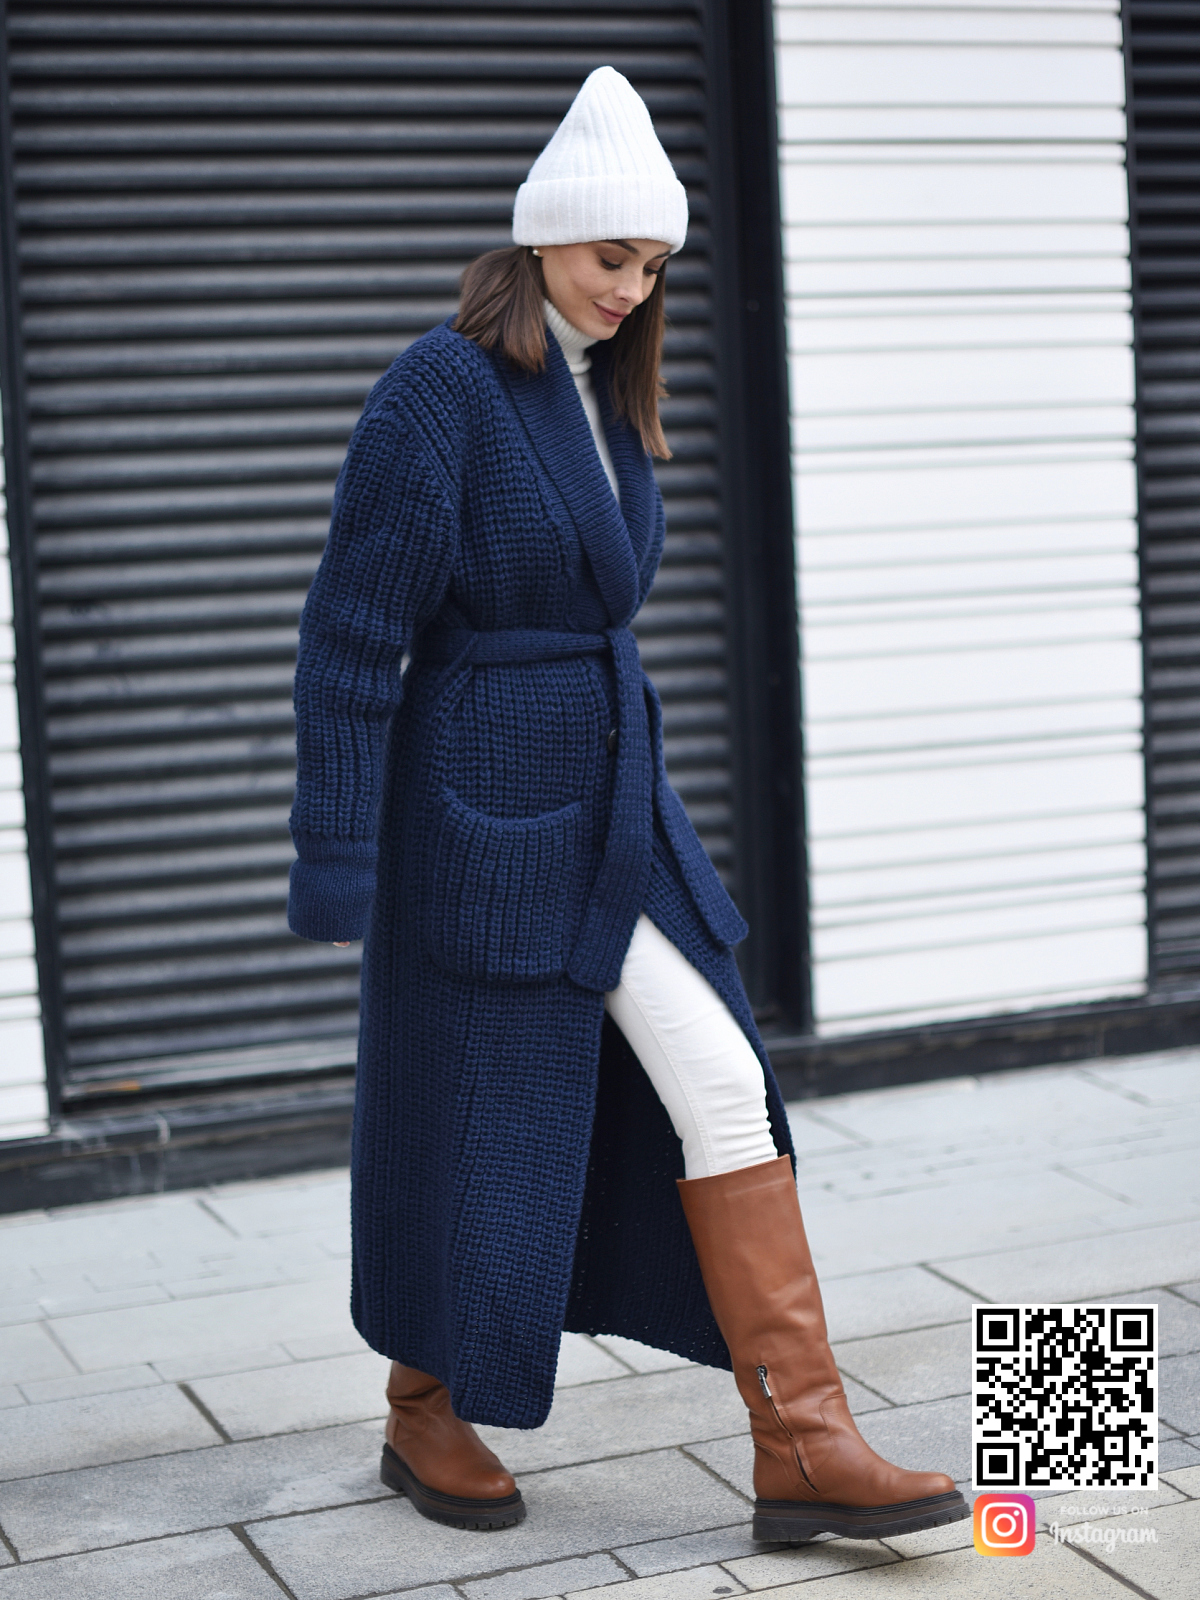 На второй фотографии кардиган синий женский с карманами в интернет-магазине вязаной одежды Shapar.